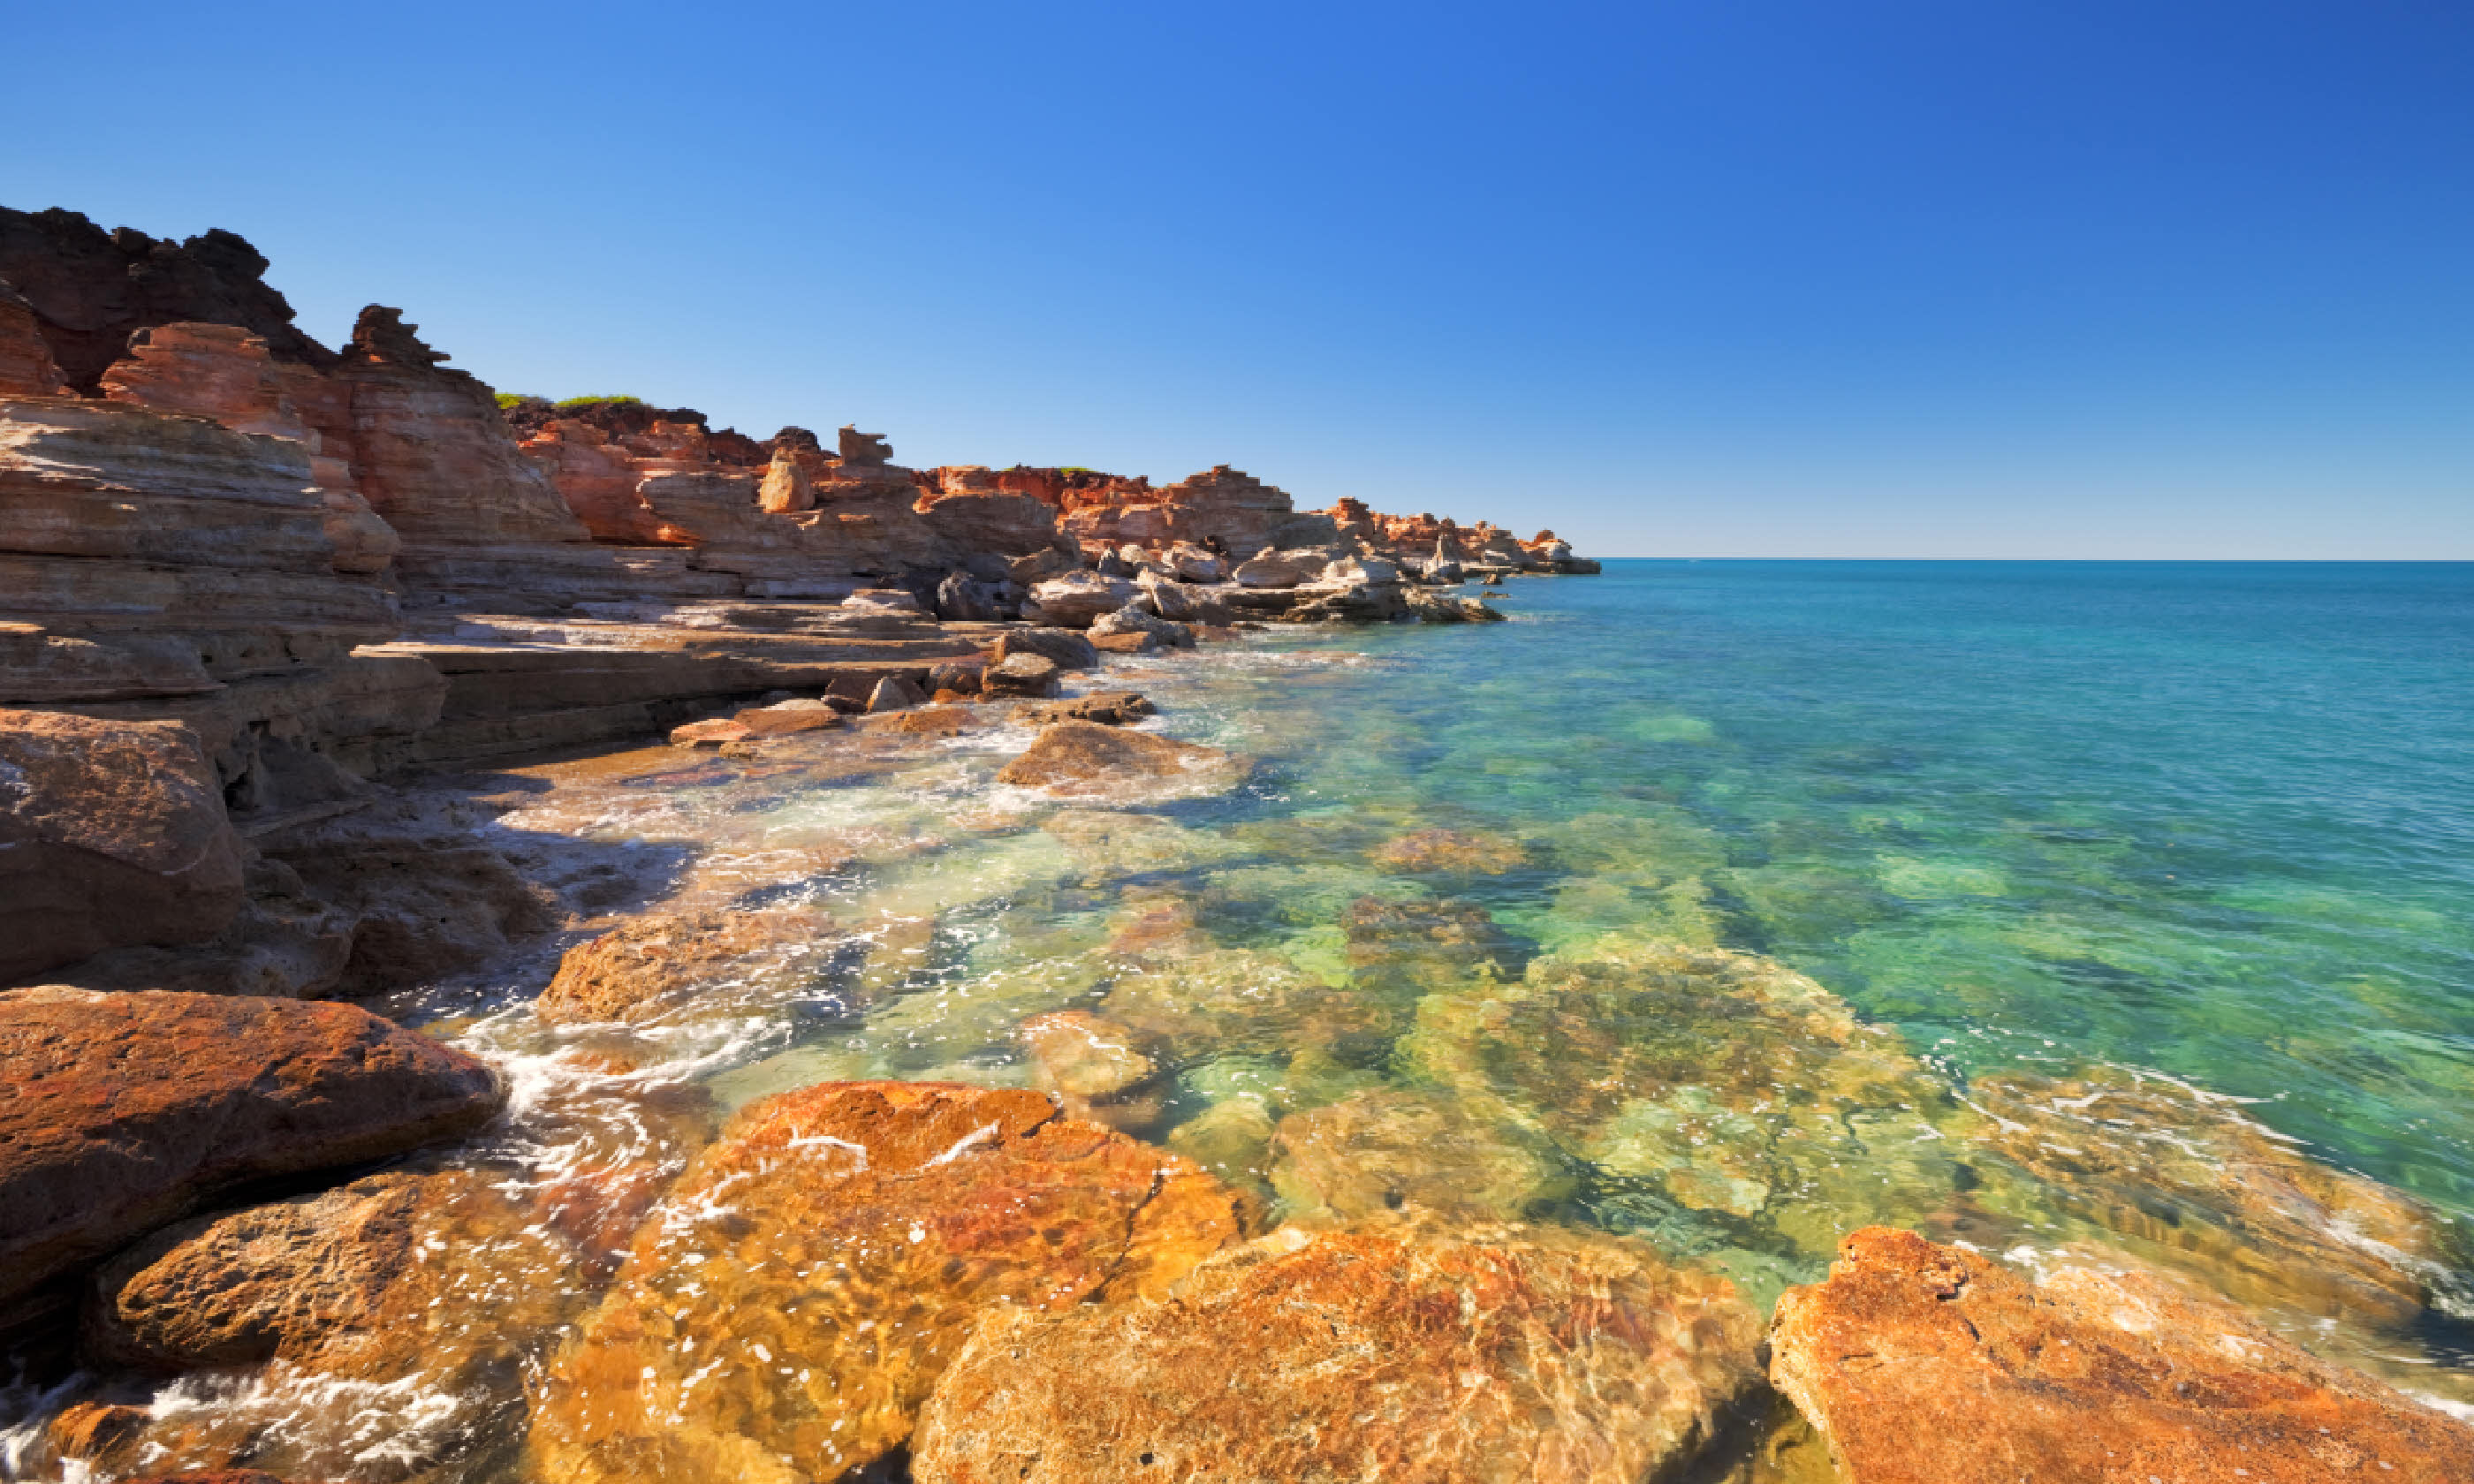 Gantheaume Point, Broome, Western Australia (Shutterstock)